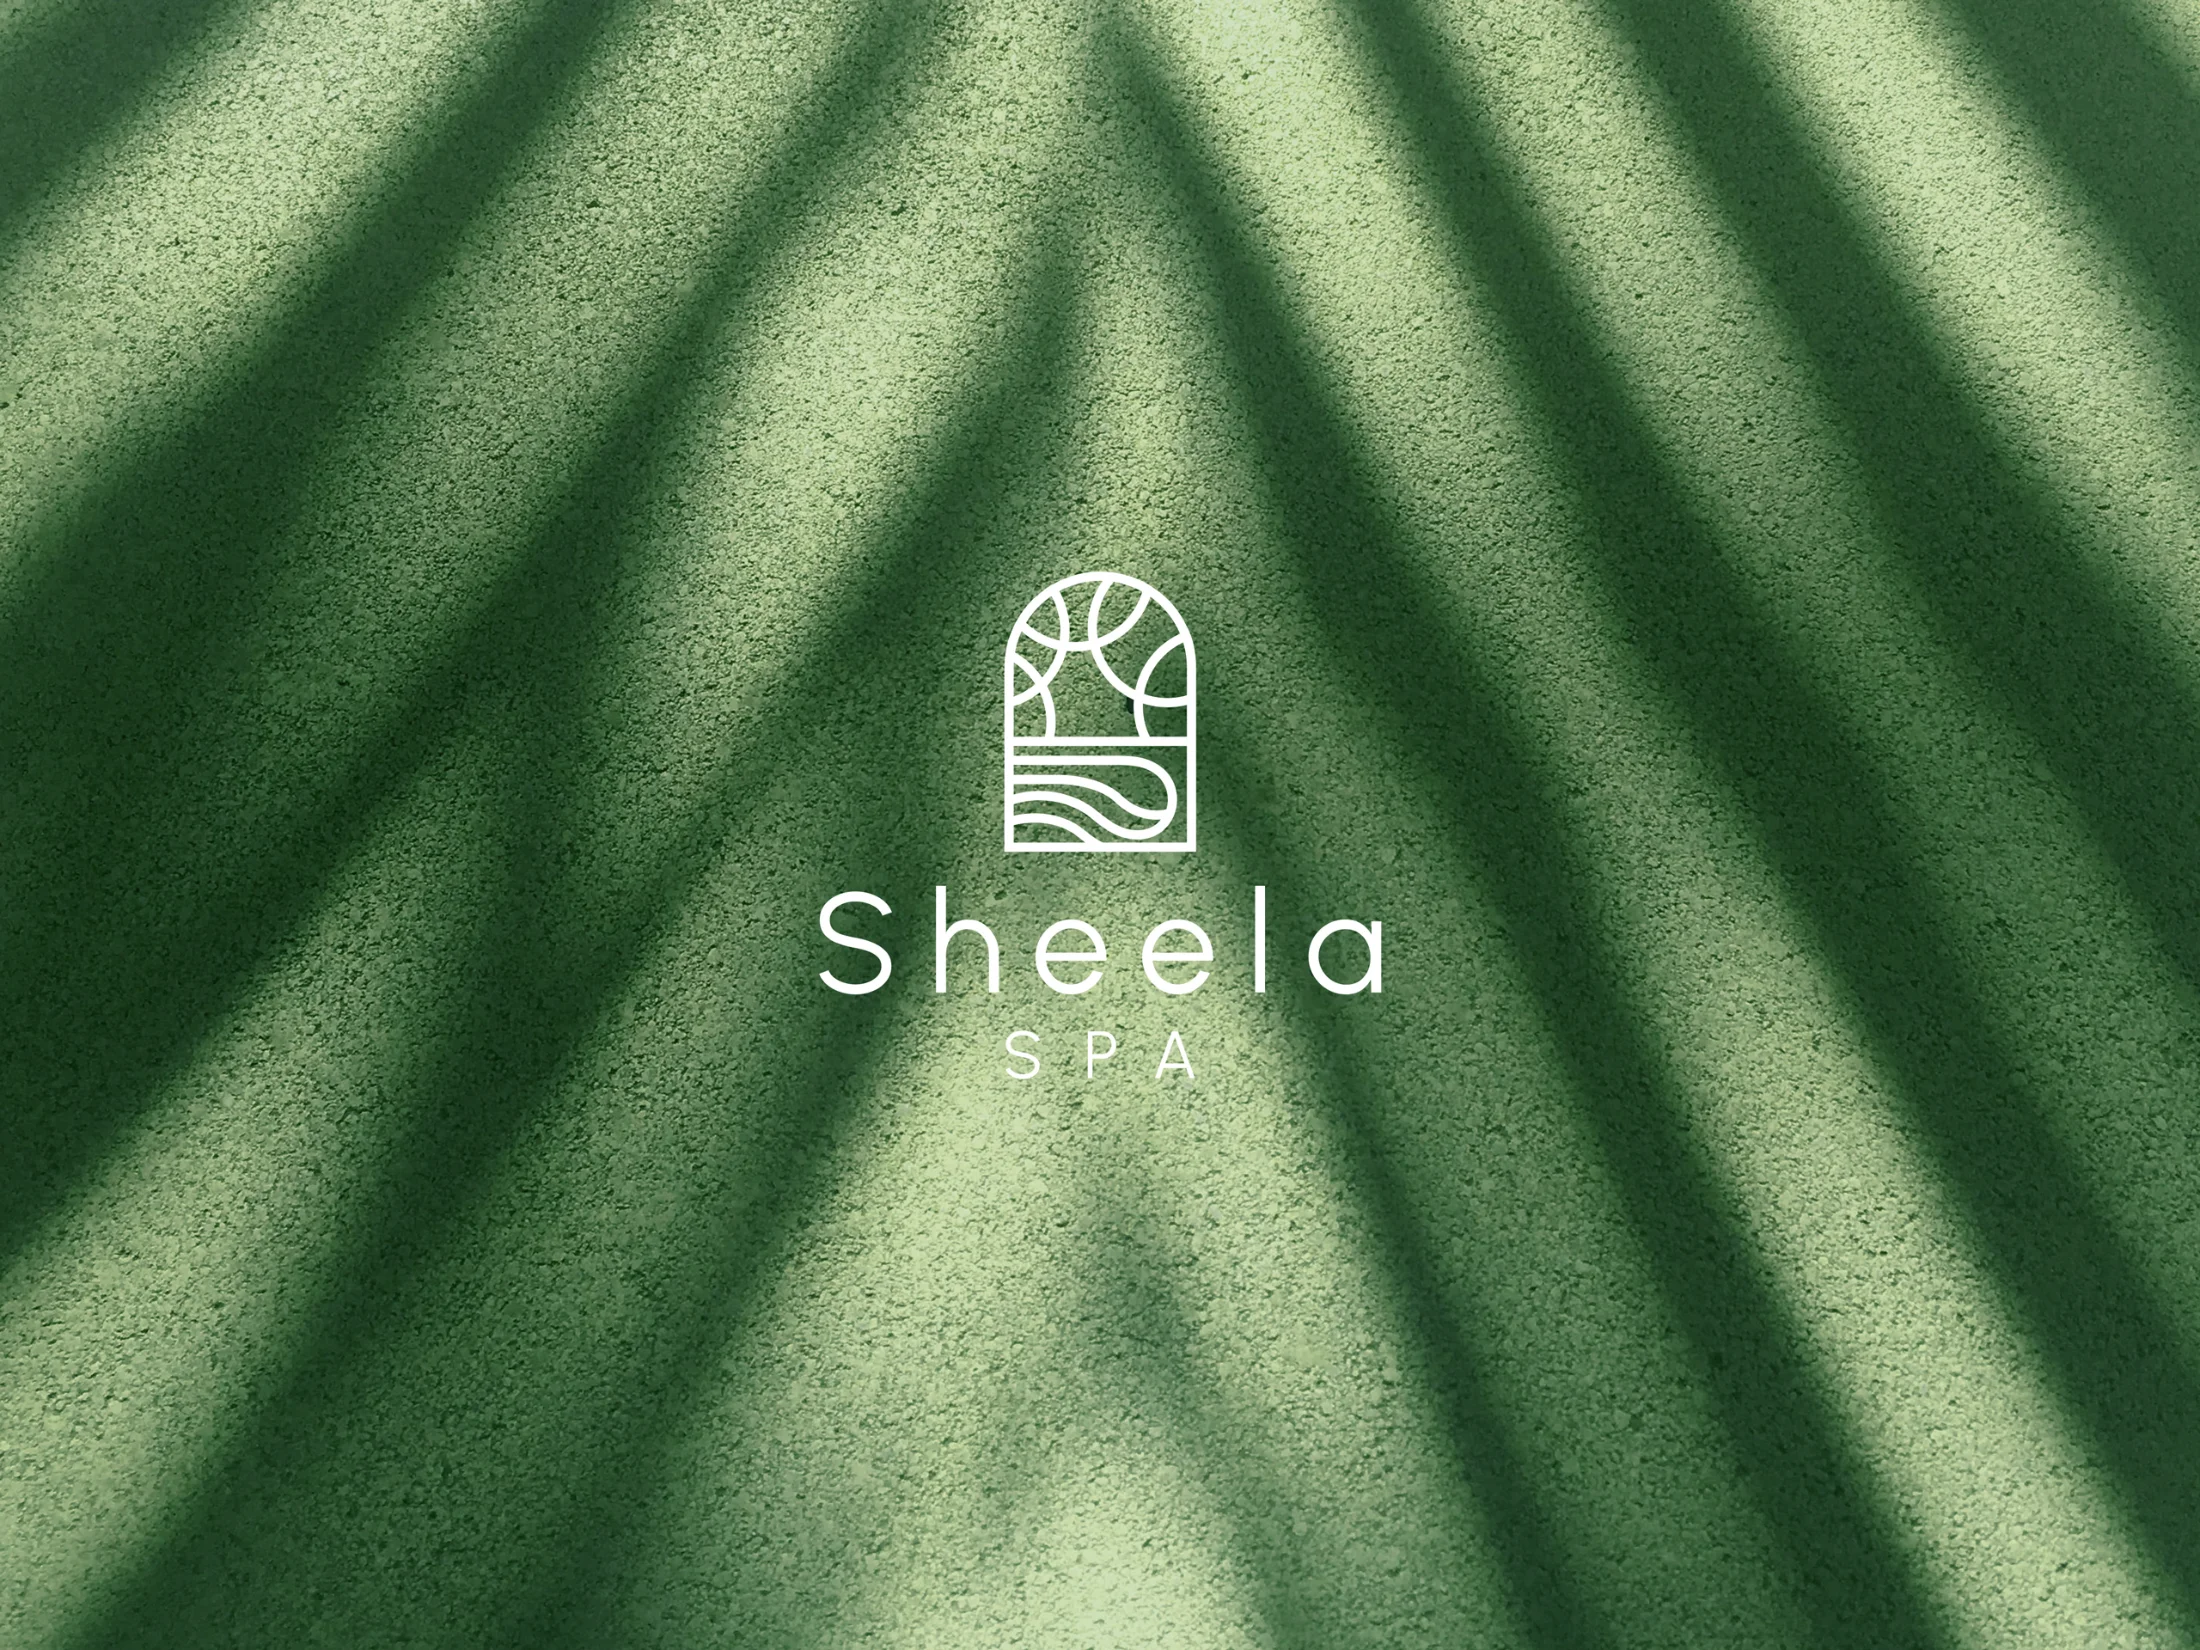 Sheela Spa By Skyfield Co